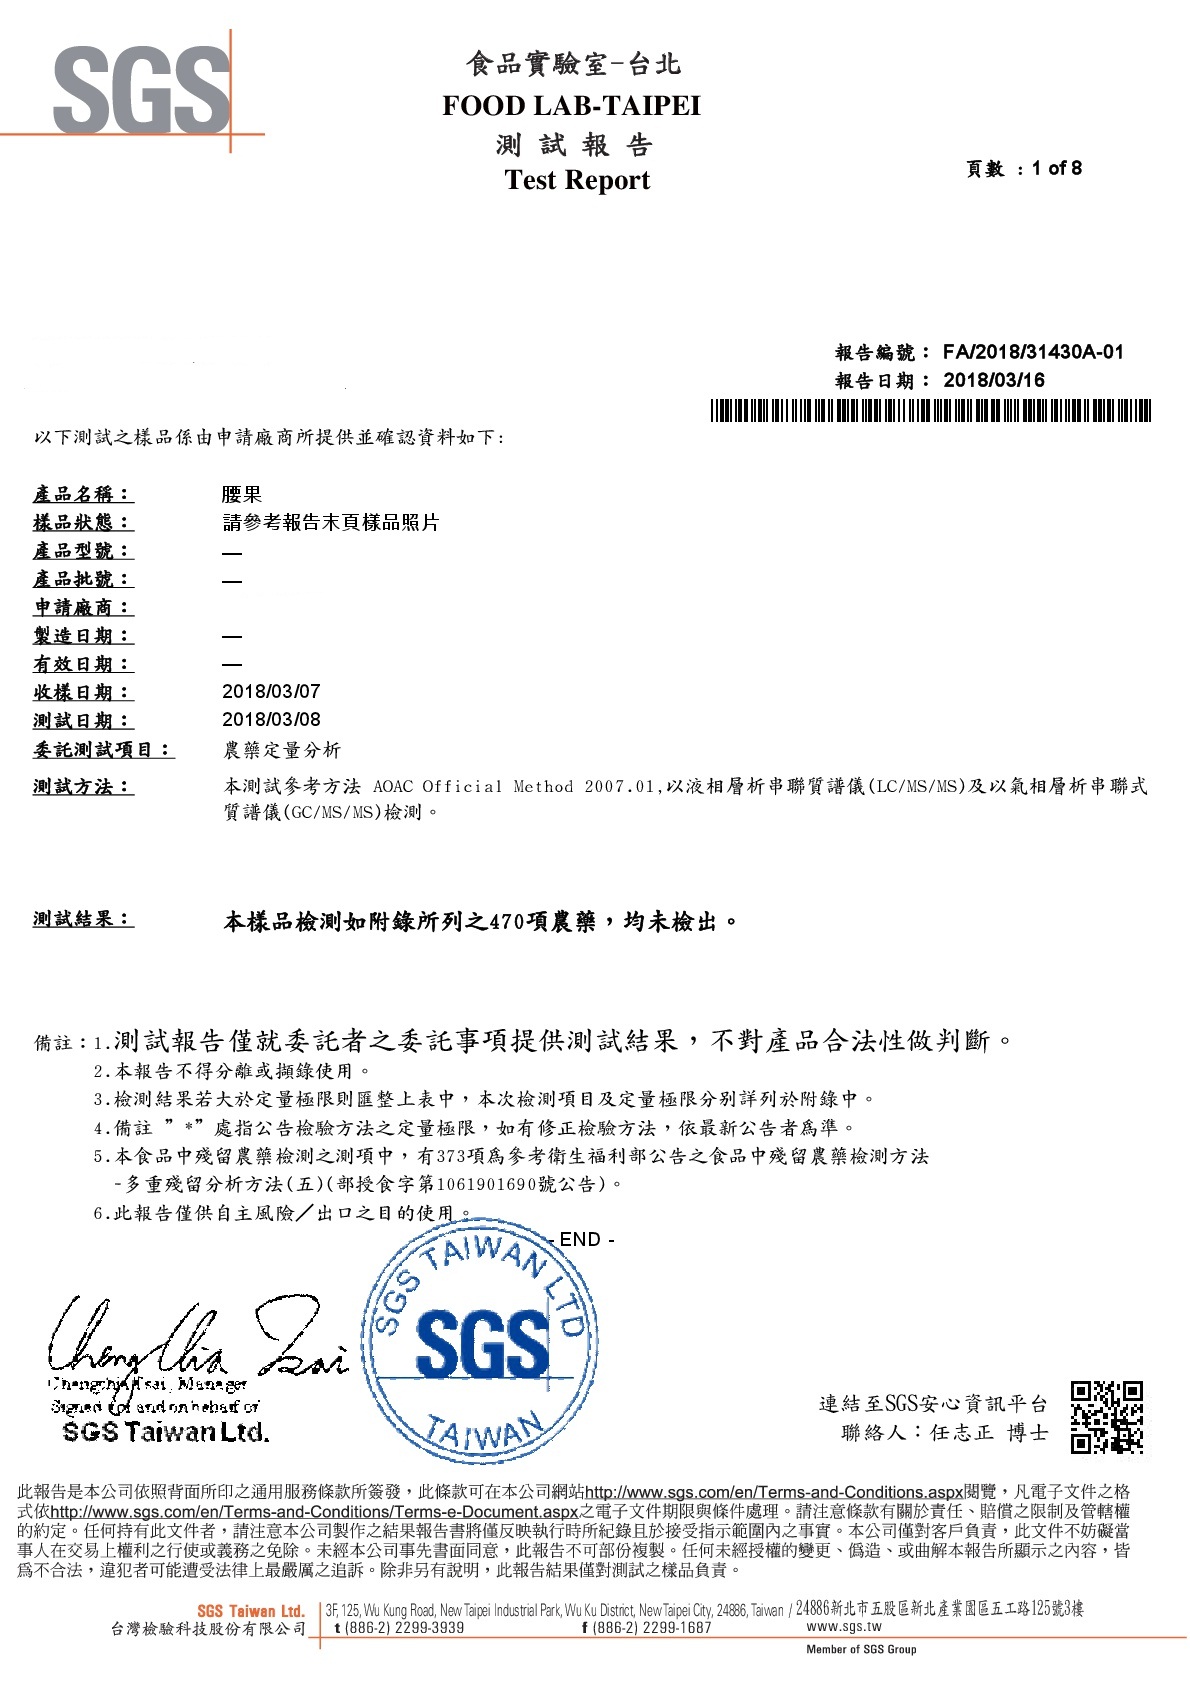 腰果-SGS農藥檢驗合格